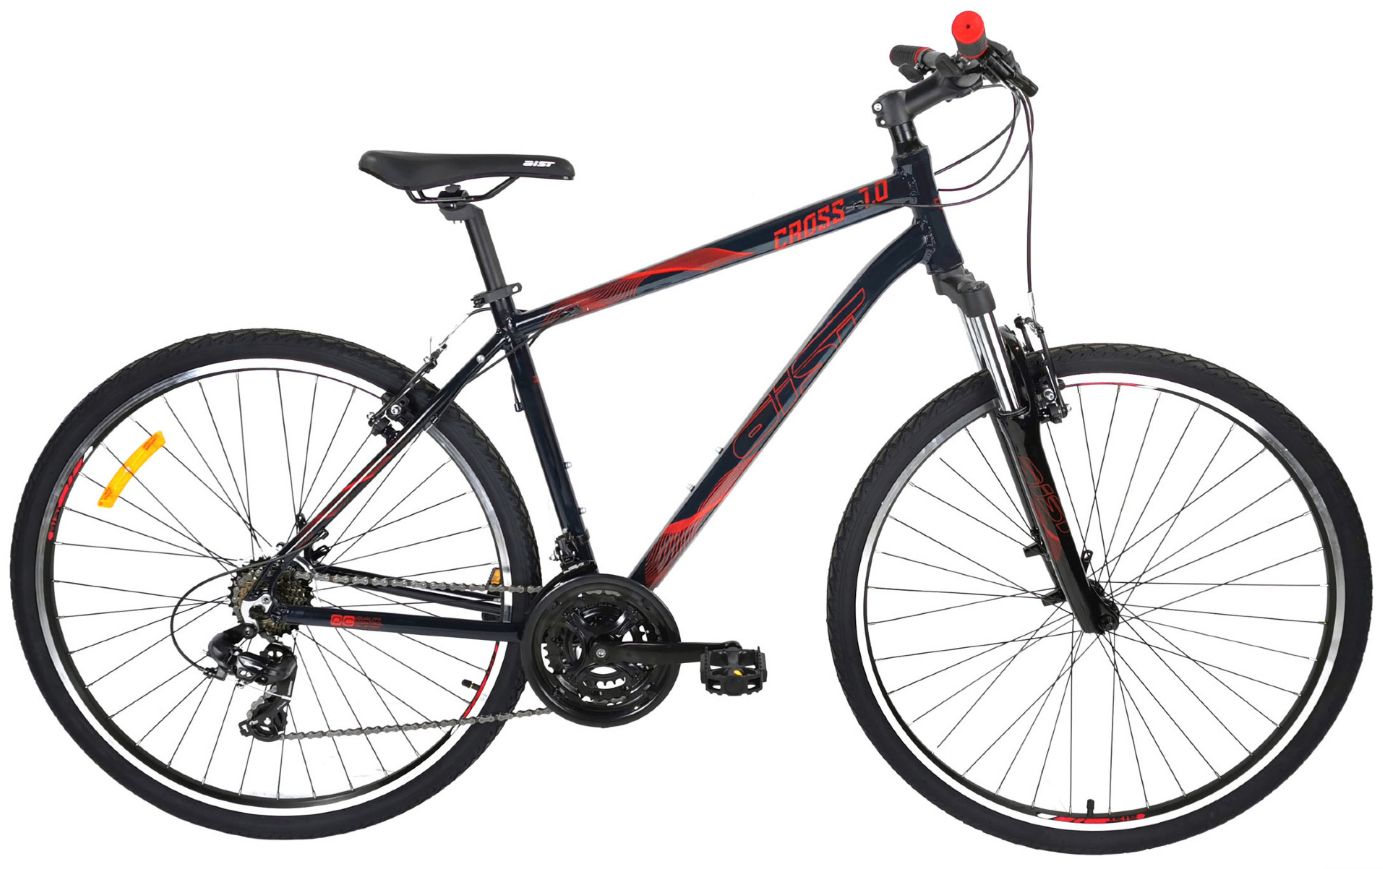 Велосипед городской Aist Cross 1 W 28 17 черный 2020 дорожный колесо 28 рама-алюмин.